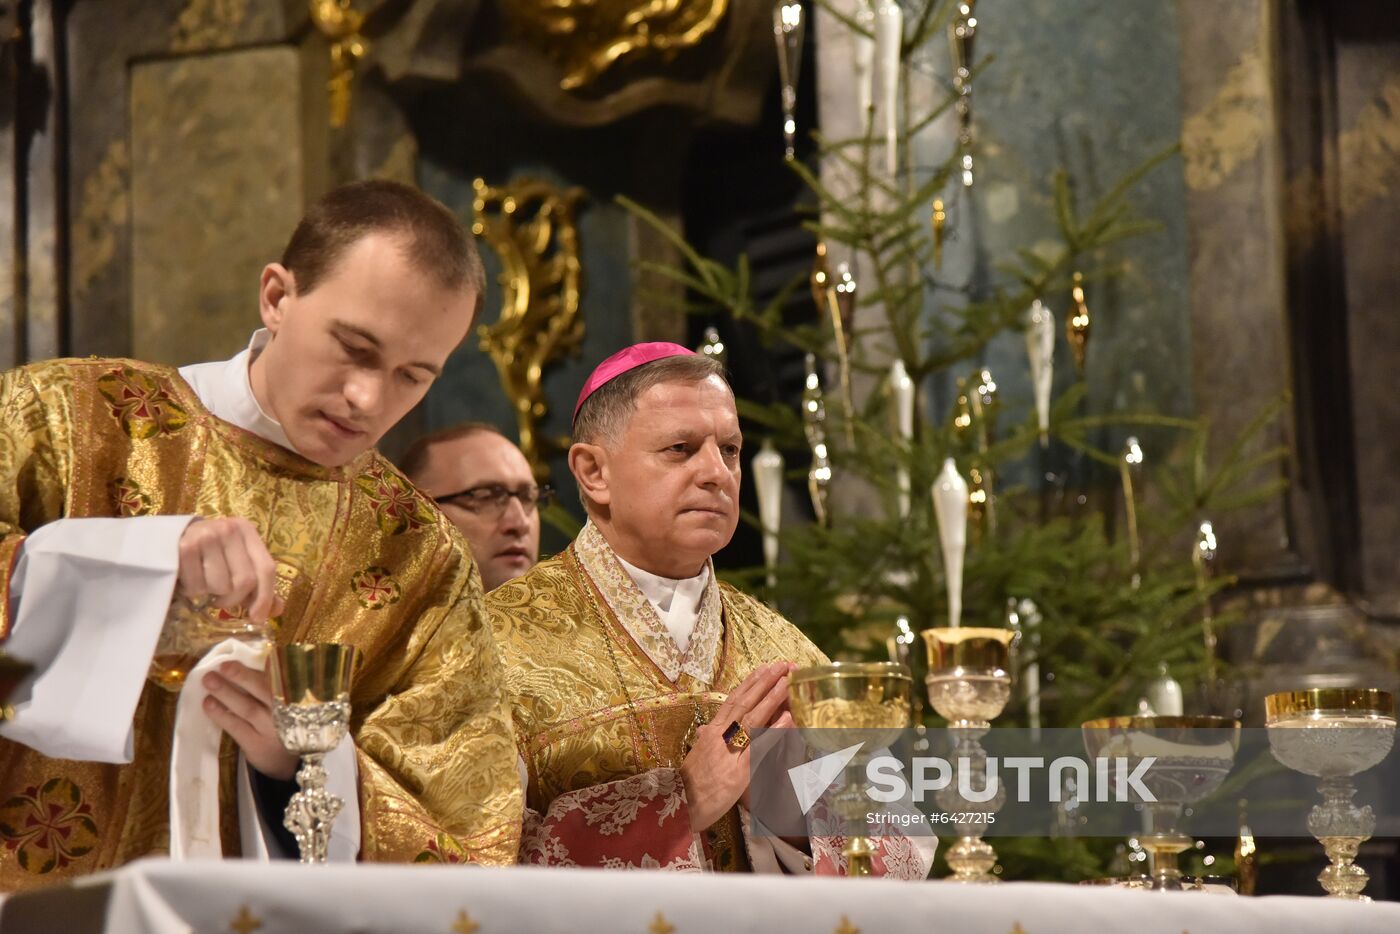 Ukraine Catholic Christmas